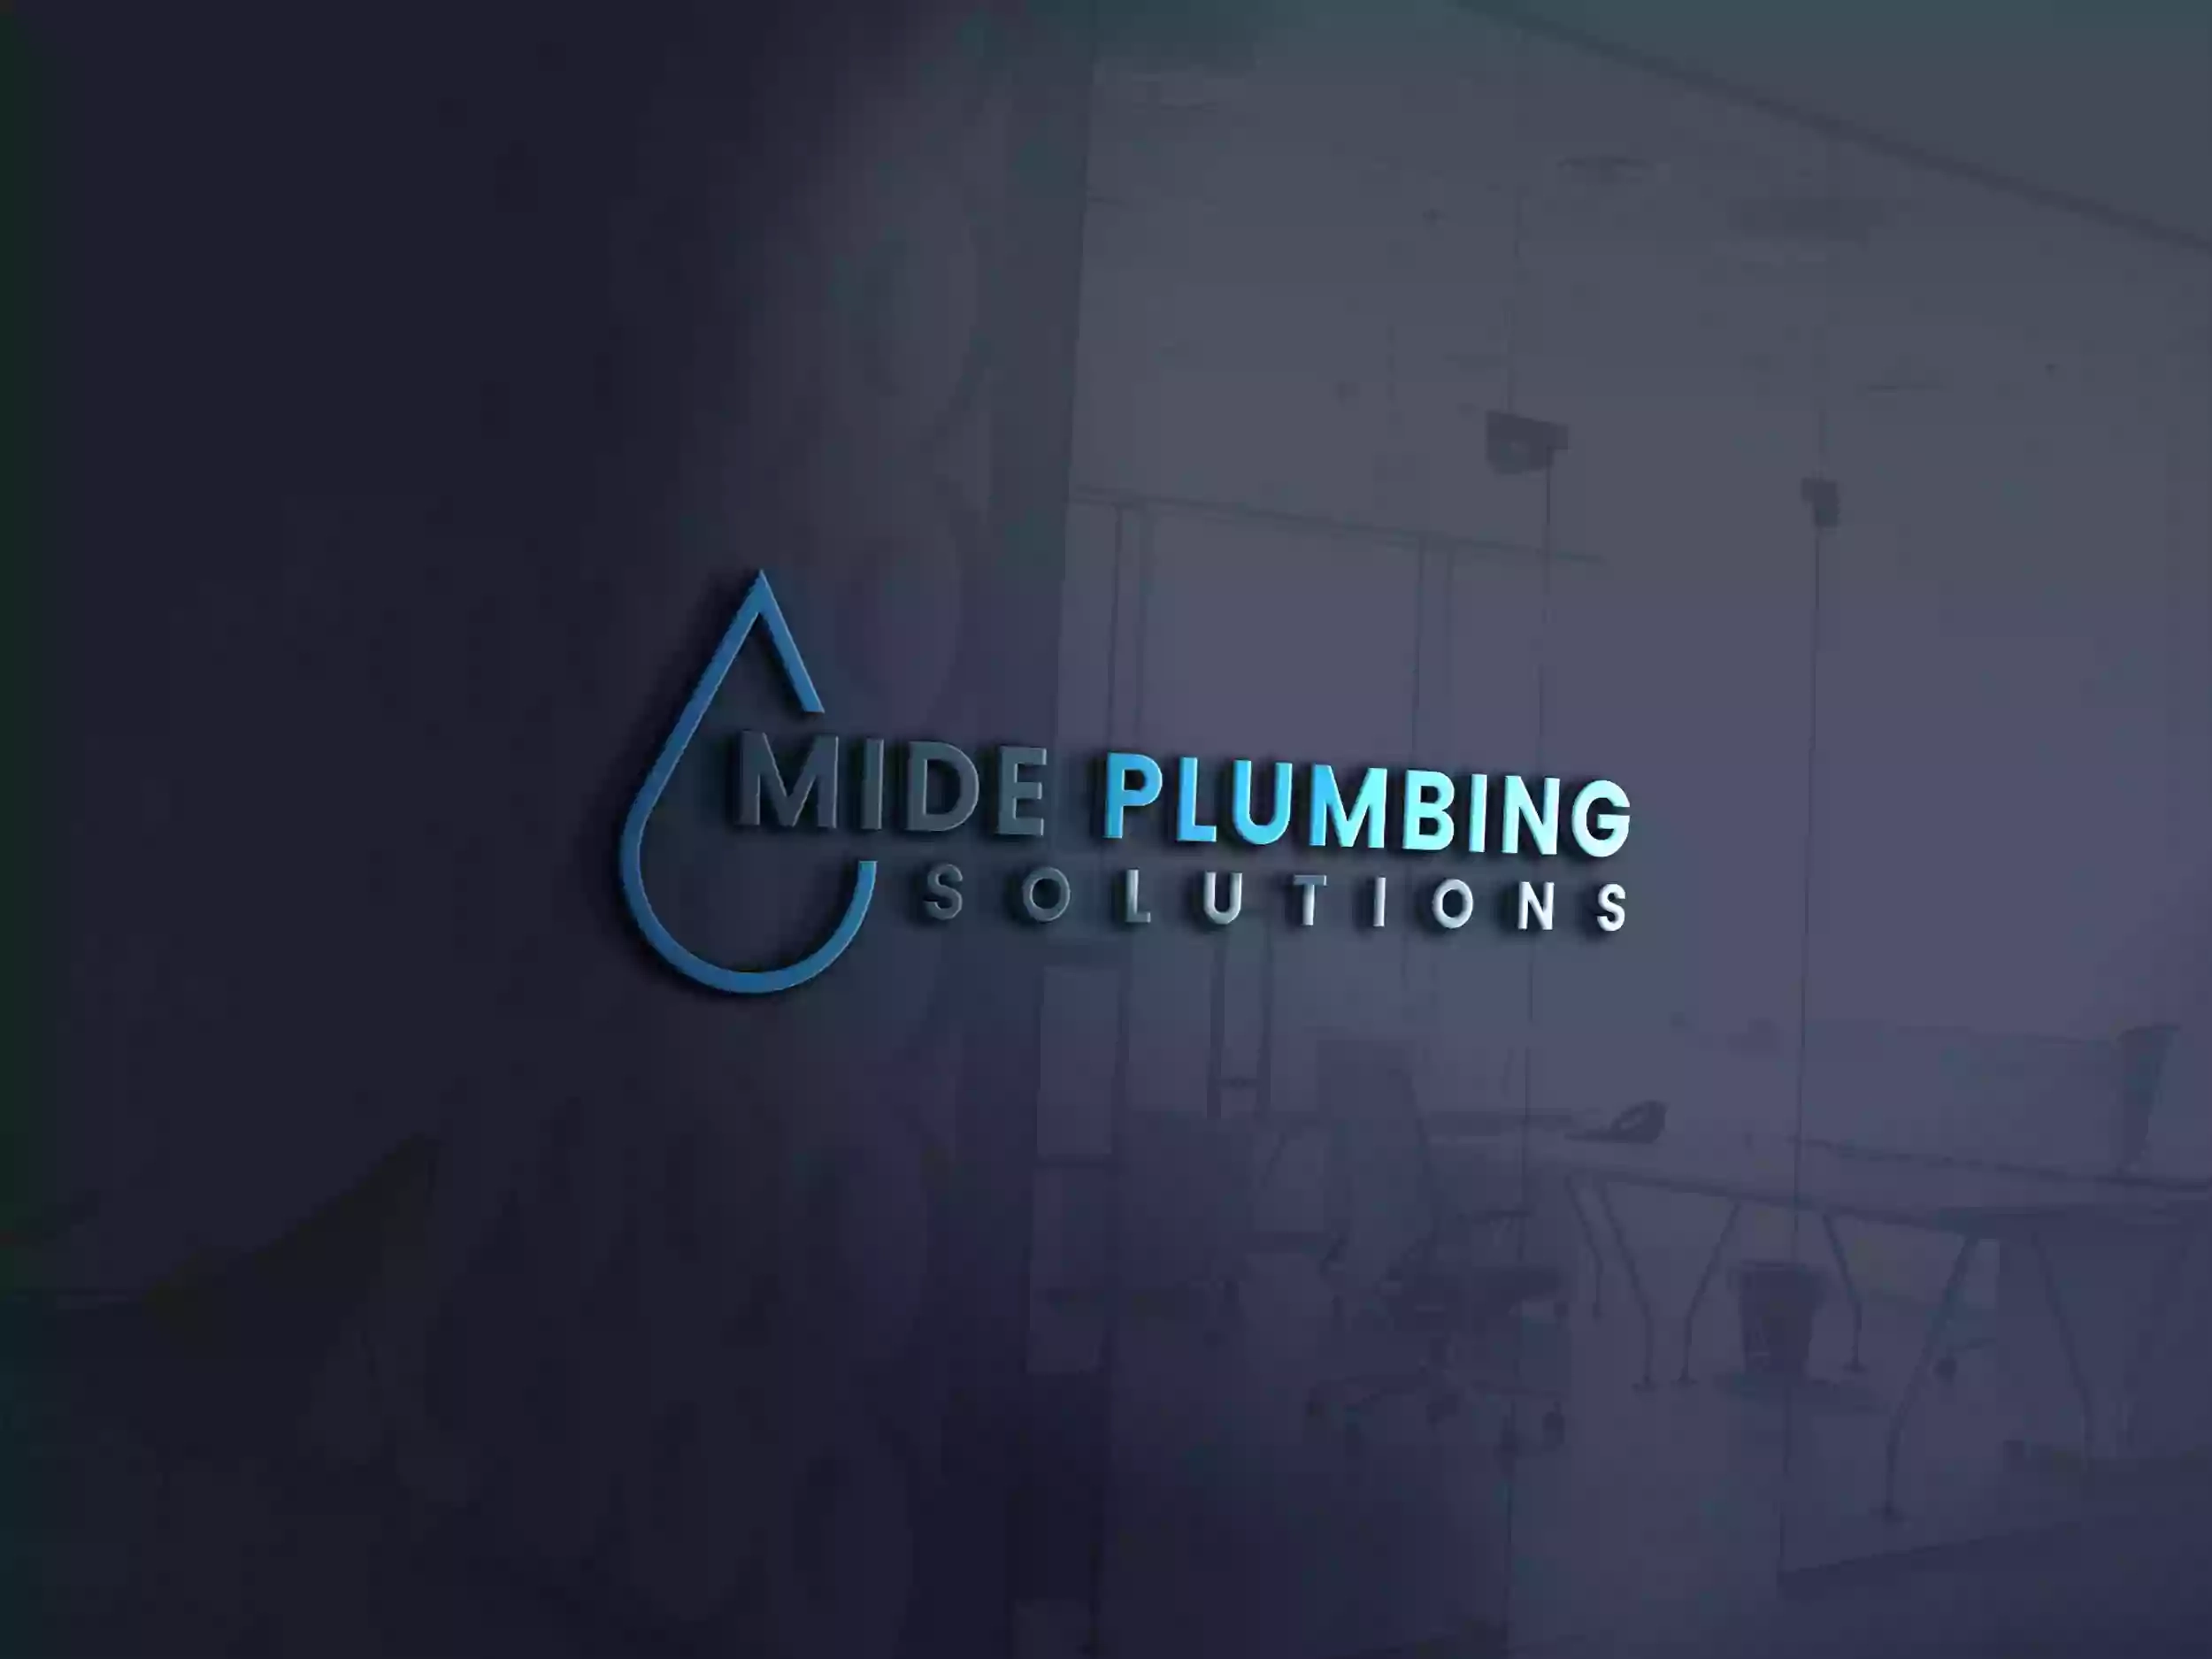 Mide Plumbing Solutions